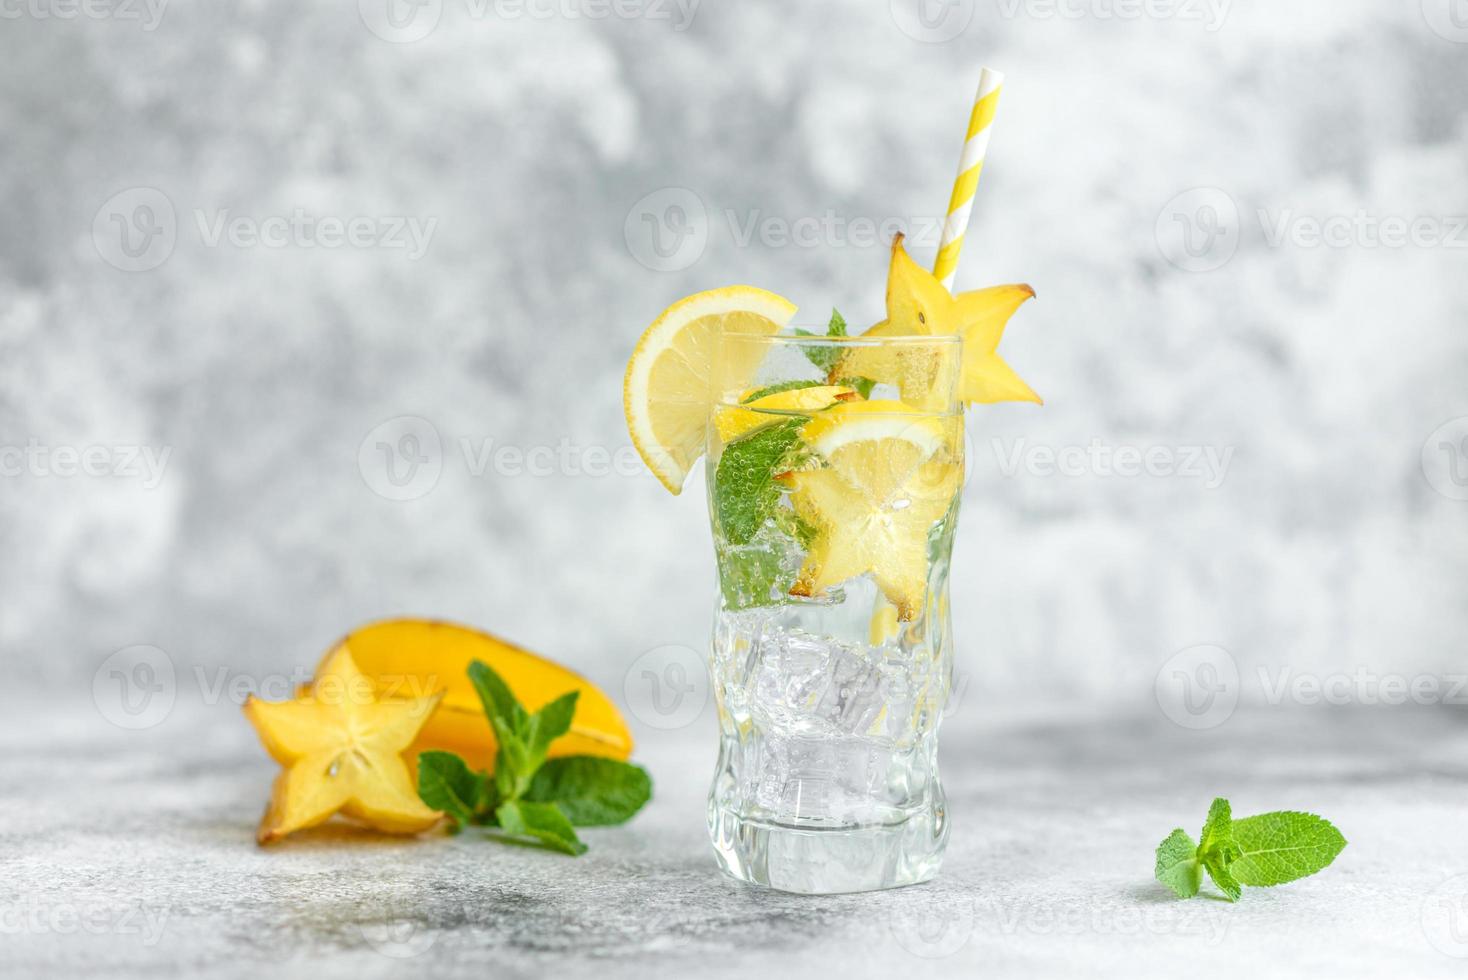 Cóctel de verano fresco con limones, menta y hielo, imagen de enfoque selectivo foto